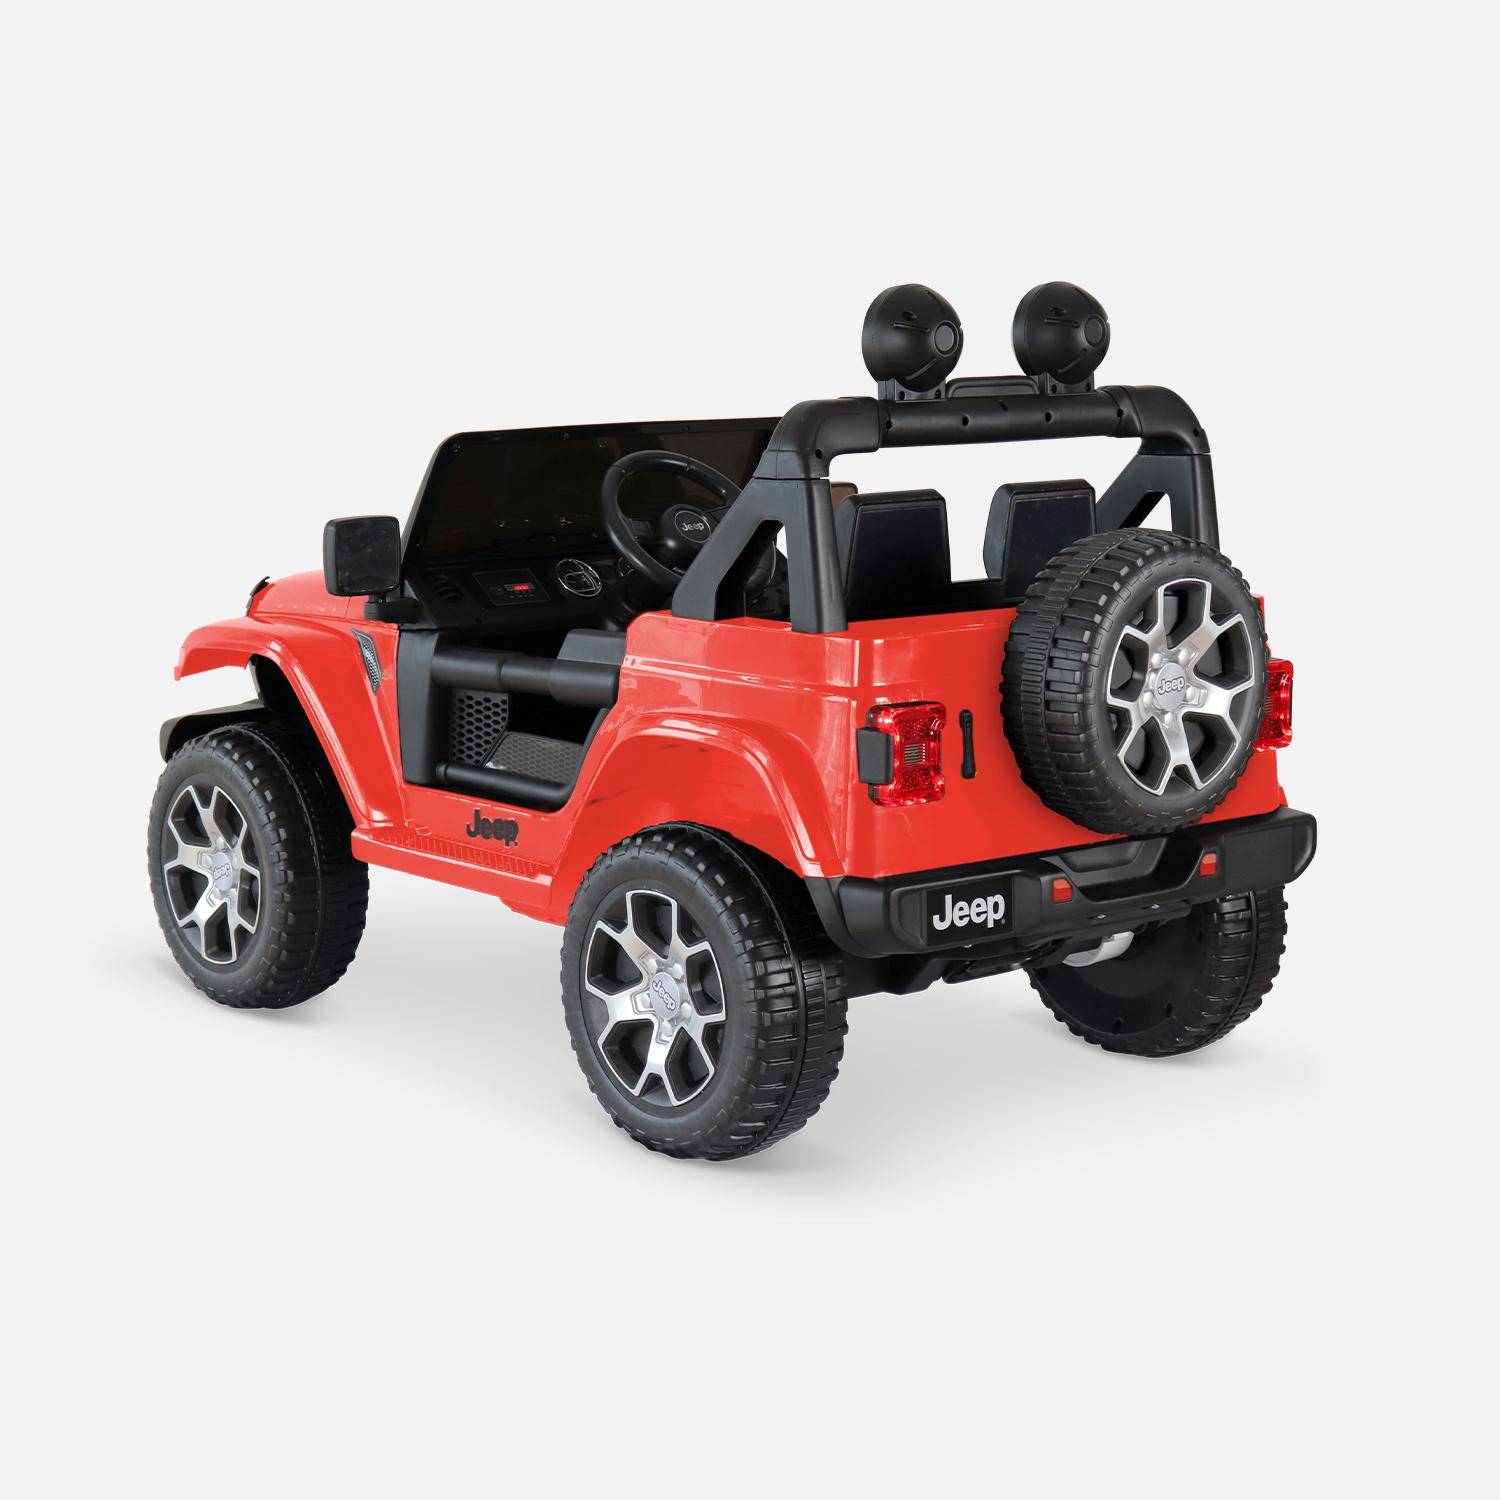 Carro eléctrico de 12V para crianças - JEEP Wrangler Rubicon 2 rodas motrizes, vermelho, 1 lugar, com auto-rádio, controlo remoto, MP3, porta USB / cartão SD, tomada jack e faróis funcionais Photo2